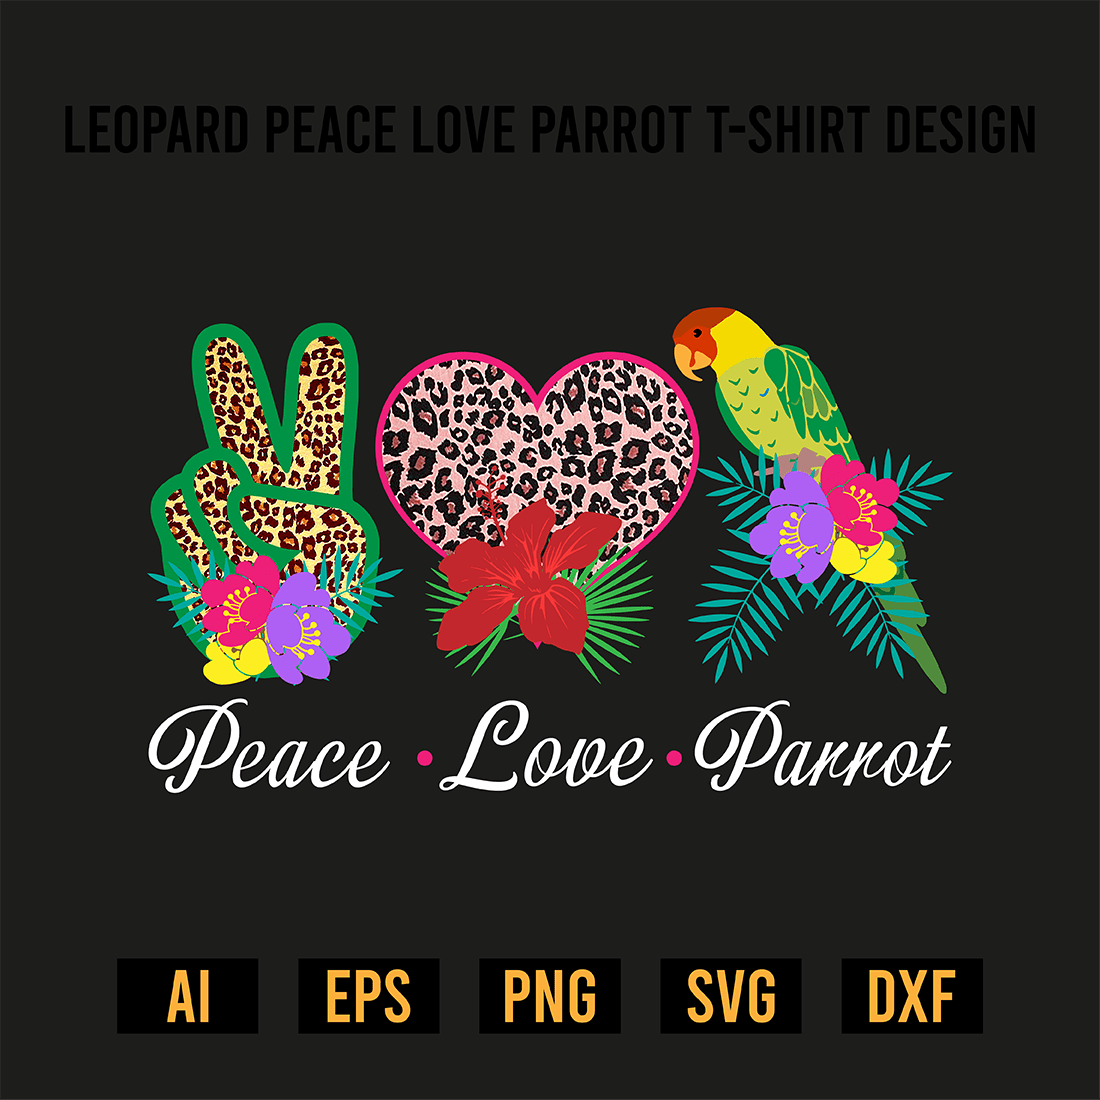 Leopard Peace Love Parrot T-Shirt Design preview image.